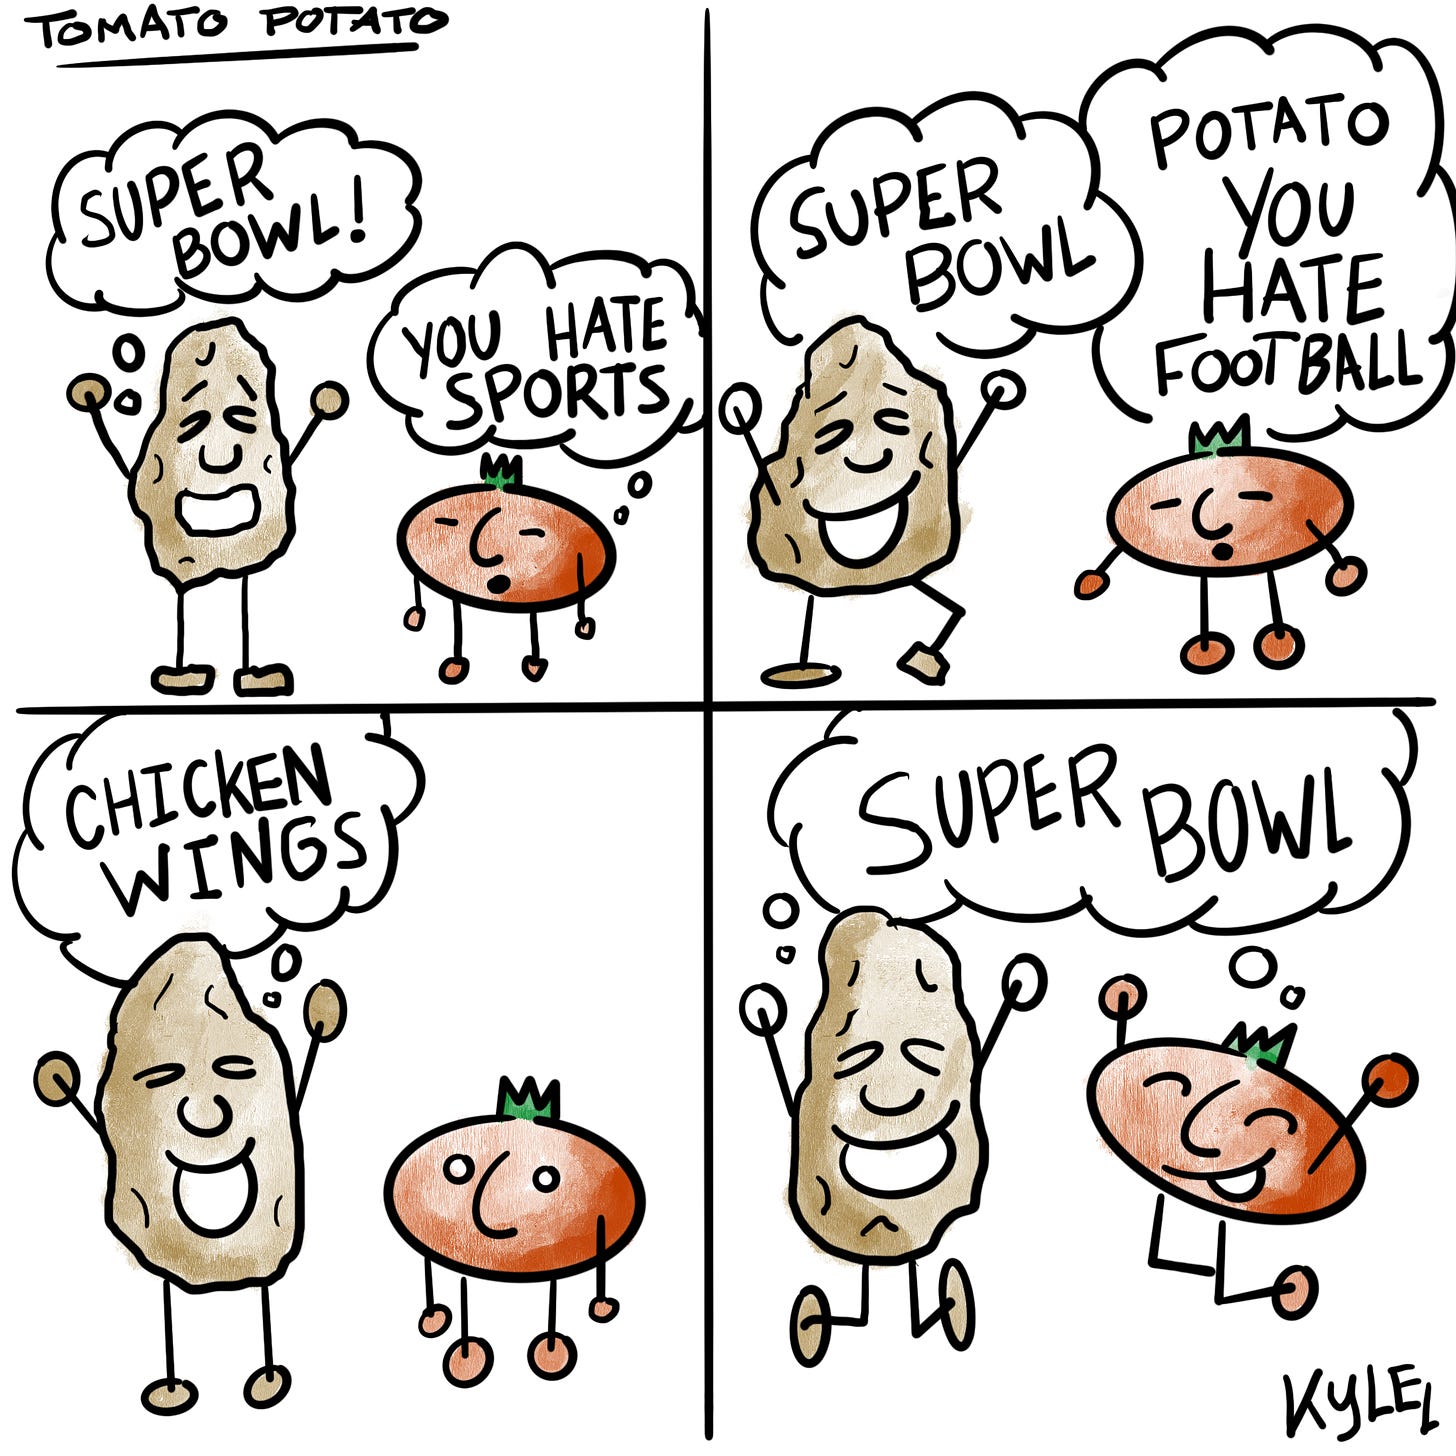 Tomato and Potato talk about the Super Bowl